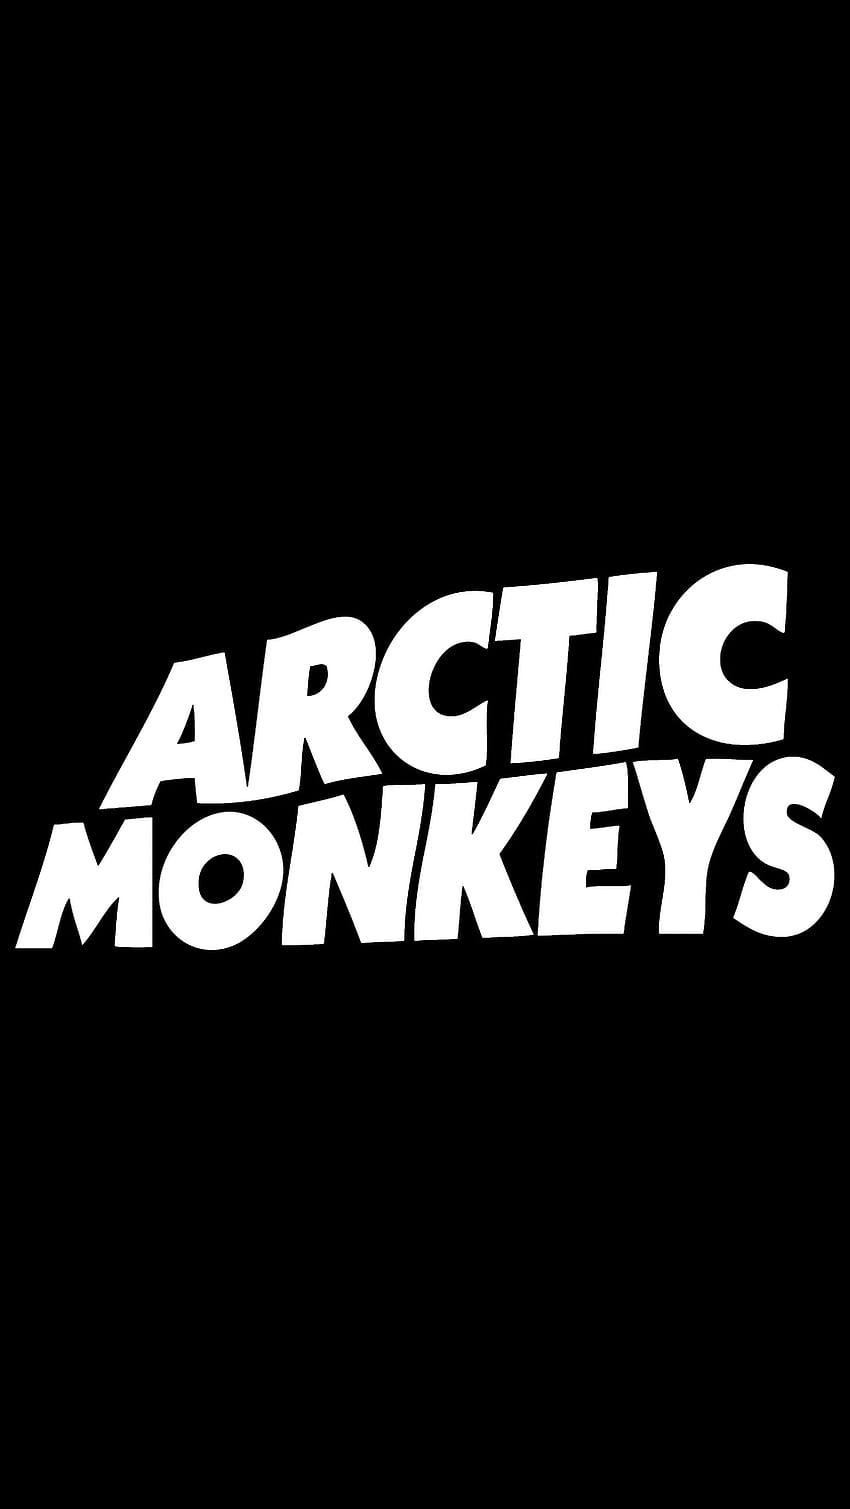 R ArcticMonkeys さん、私の新しいホーム画面のレイアウトを気に入っていただけたでしょうか。 • R Arcticmonkeys。 アークティック モンキーズ、アークティック モンキーズ、モンキー HD電話の壁紙